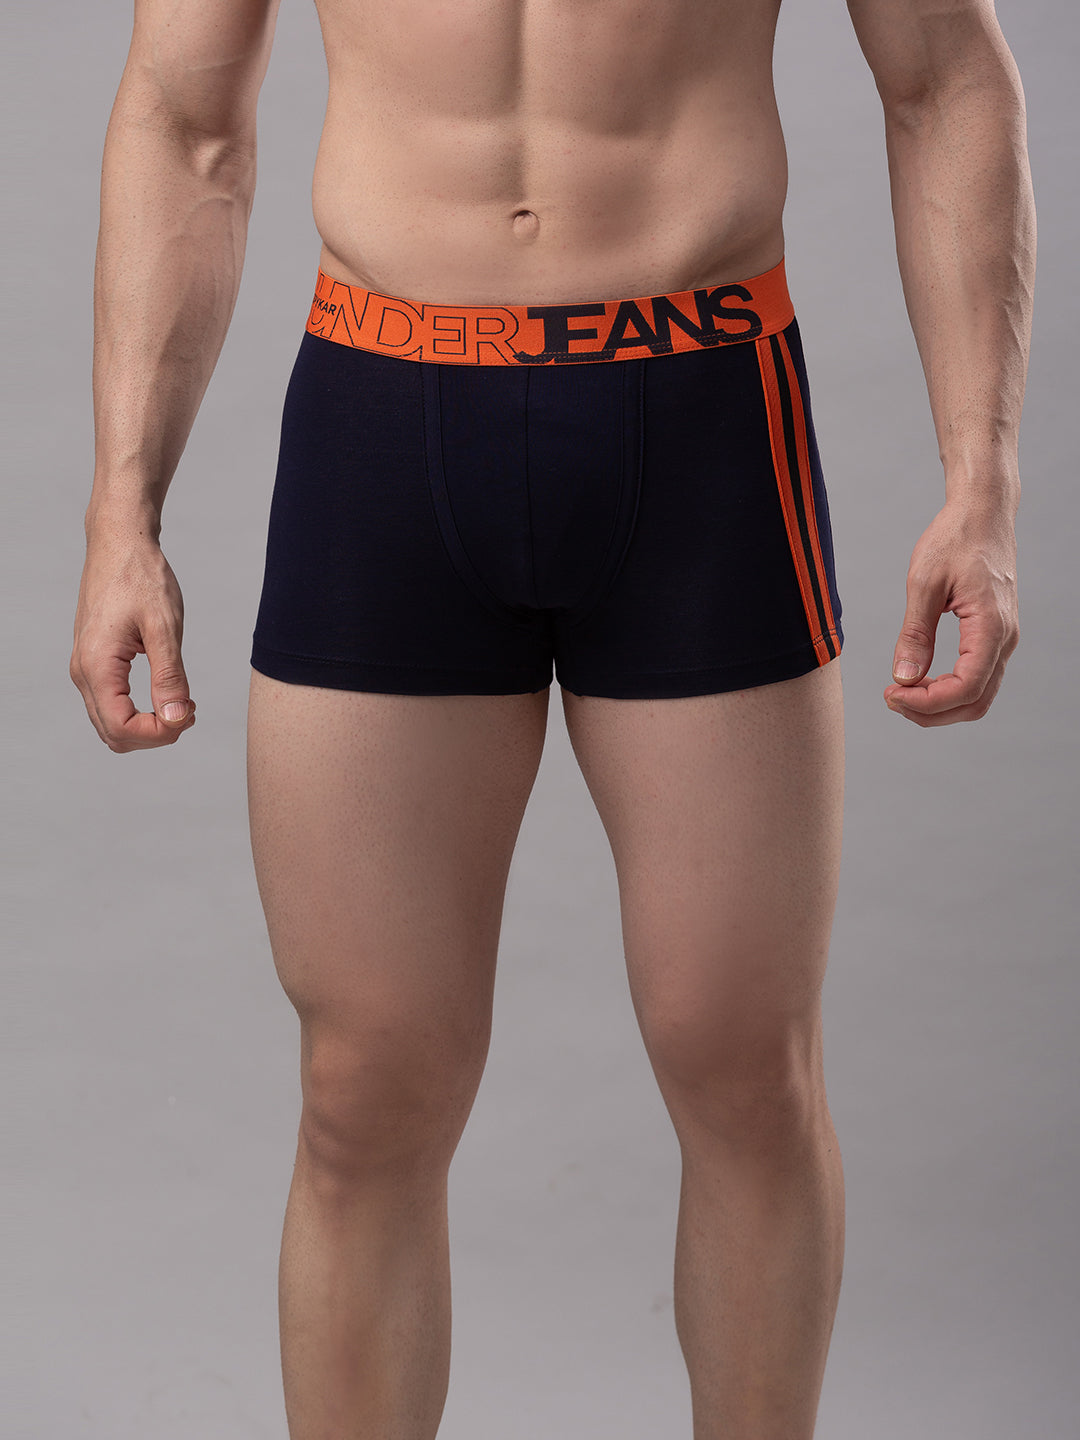 Men Premium Navy-Orange Cotton Blend Trunk- UnderJeans by Spykar